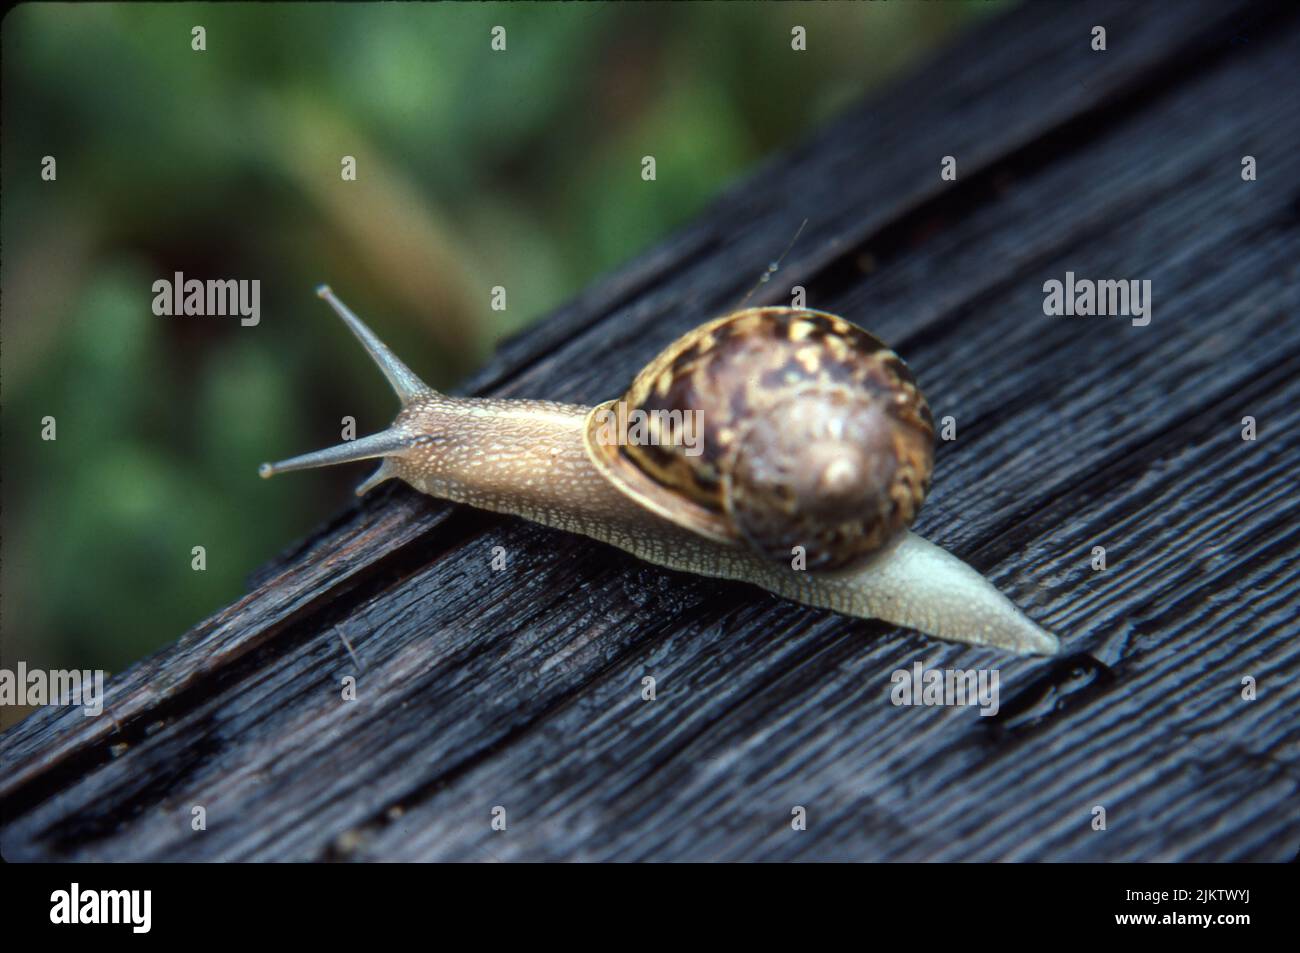 A closeup of a Garden Snail (Cornu Asperum) on a wooden surface Stock Photo